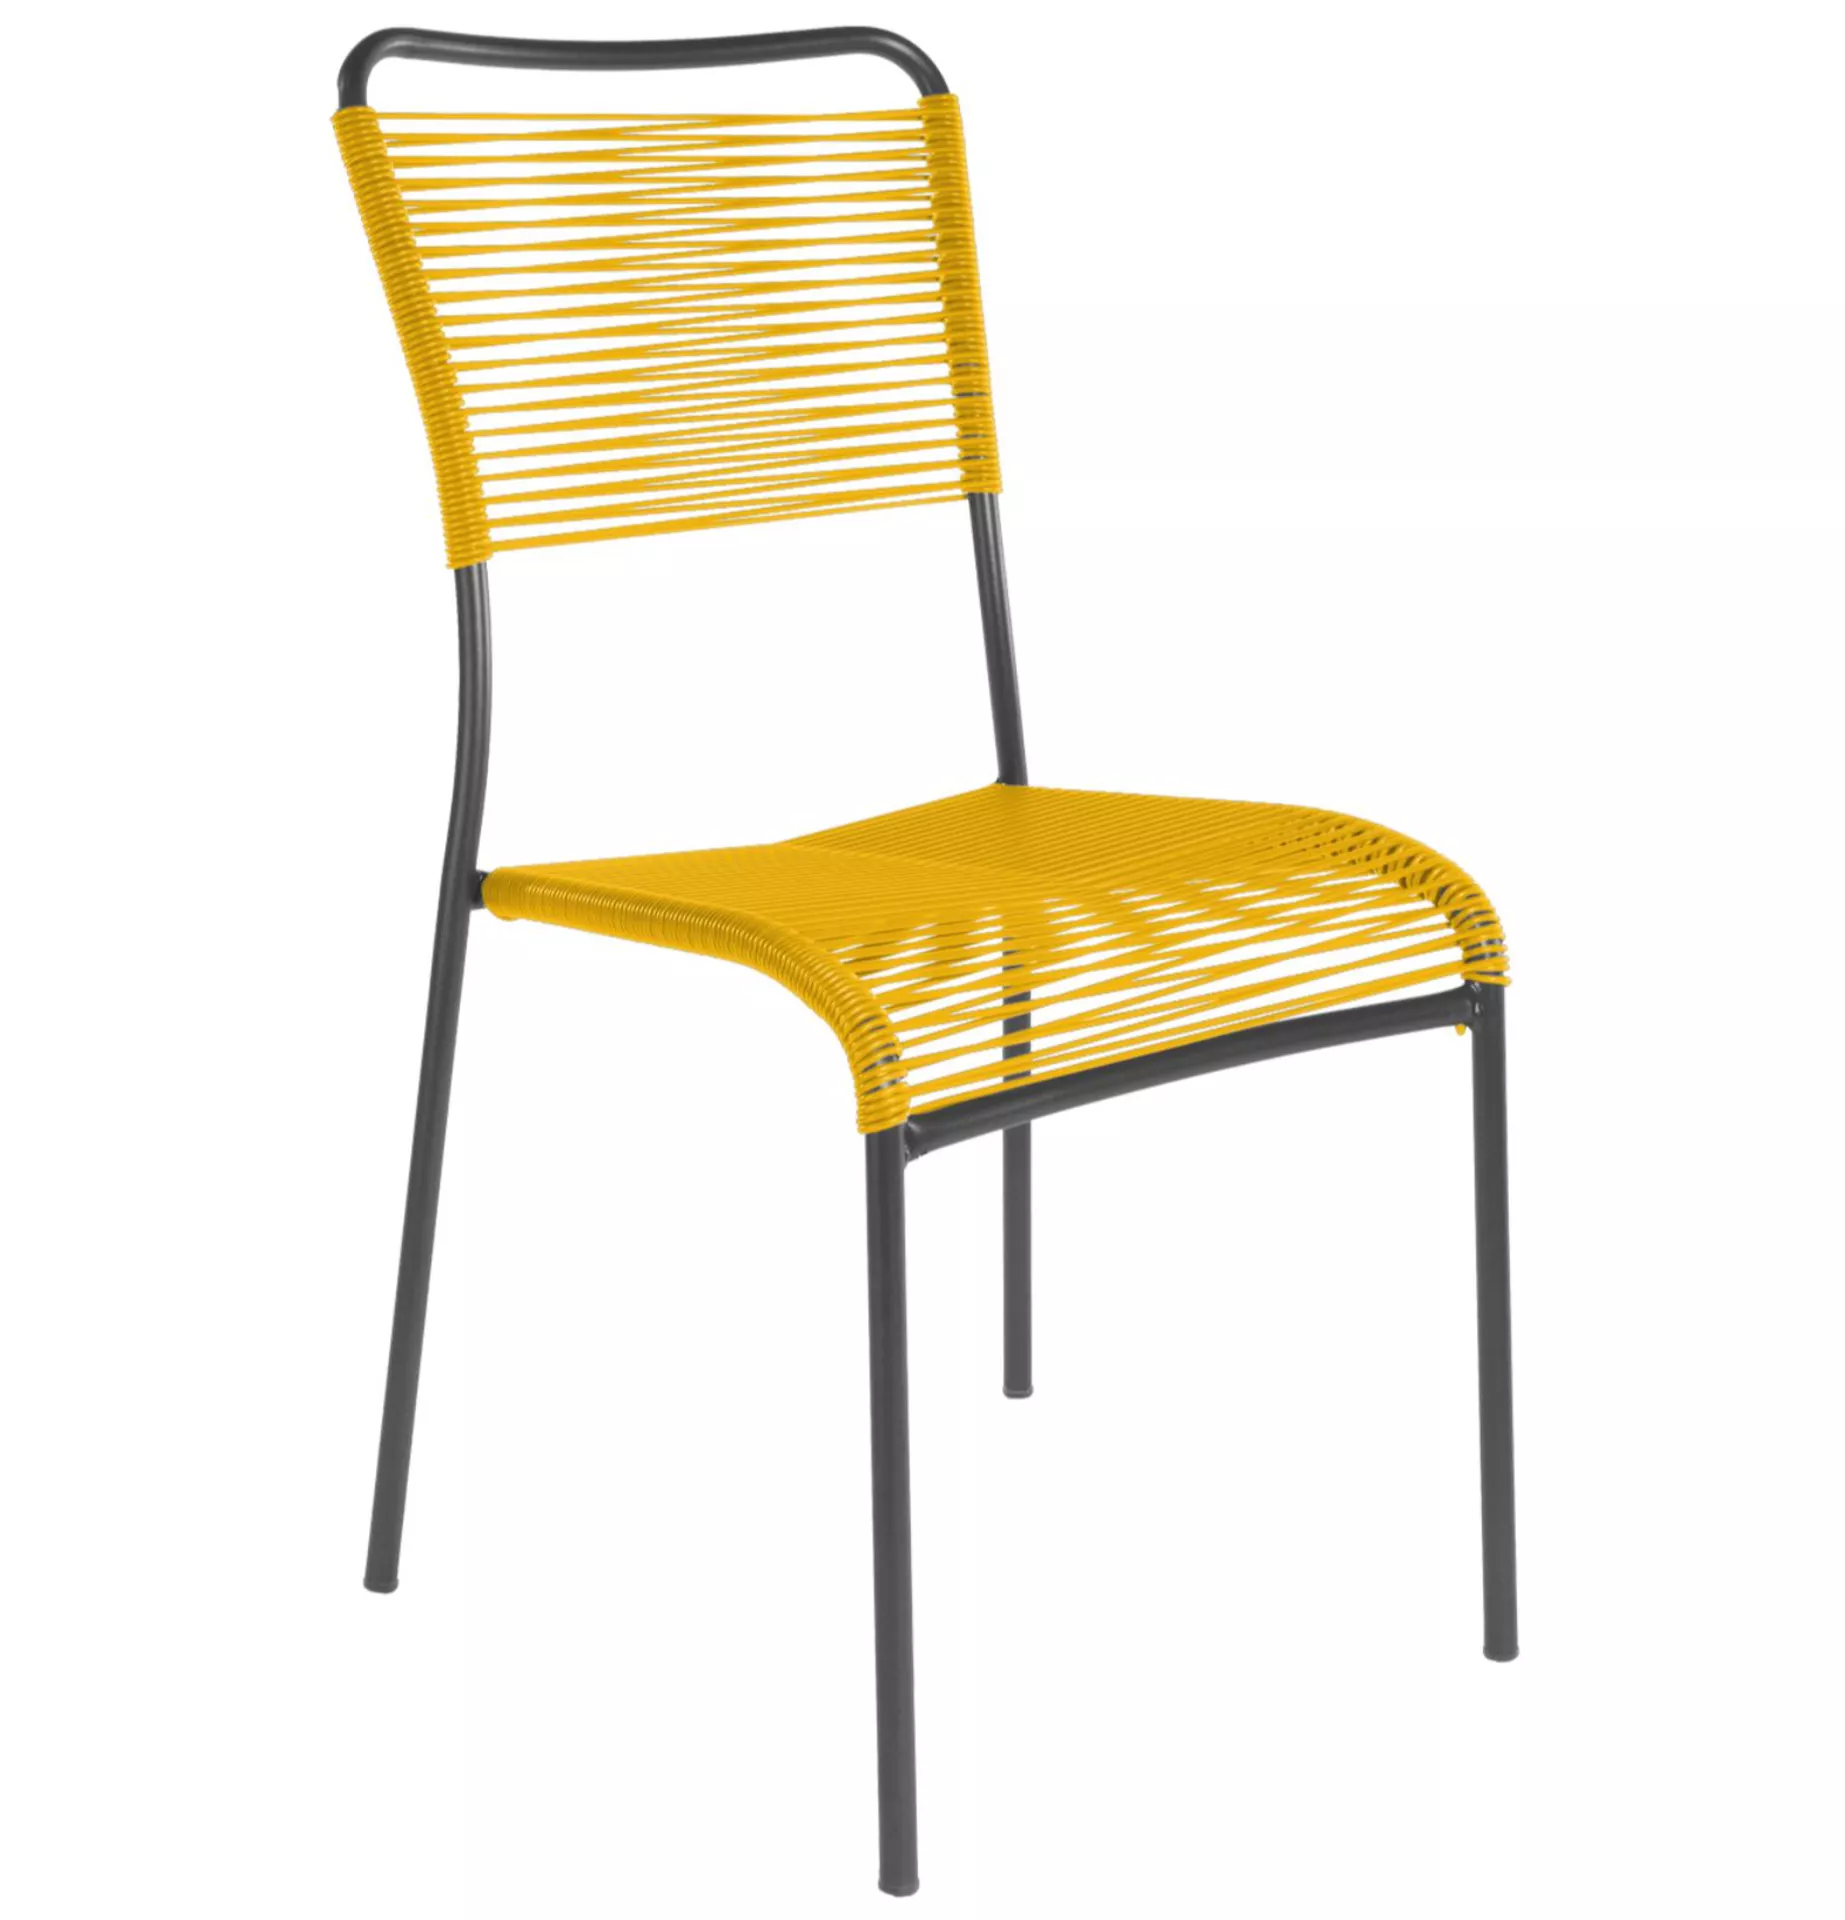 Spaghetti-Stuhl Mendrisio Schaffner / Farbe: Gelb